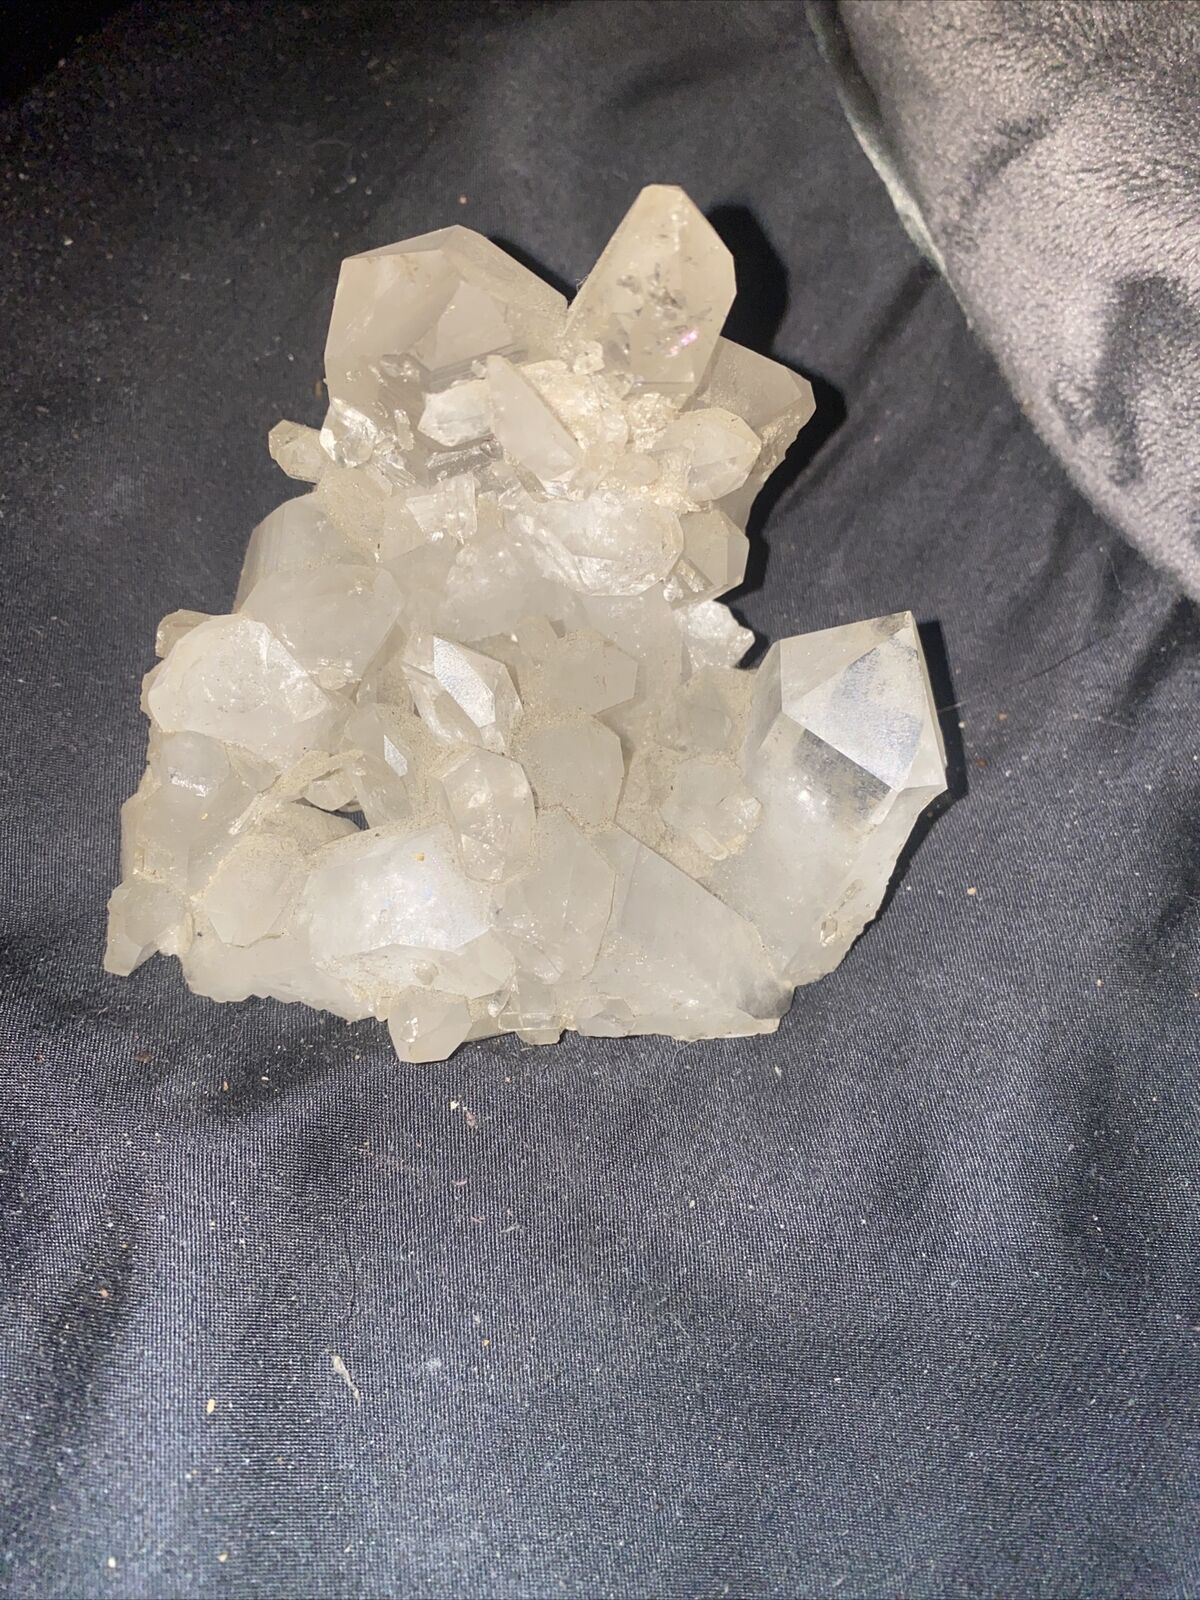 50g-150g Large Natural Clear Quartz Crystal Cluster Rock Stone Specimens Reiki